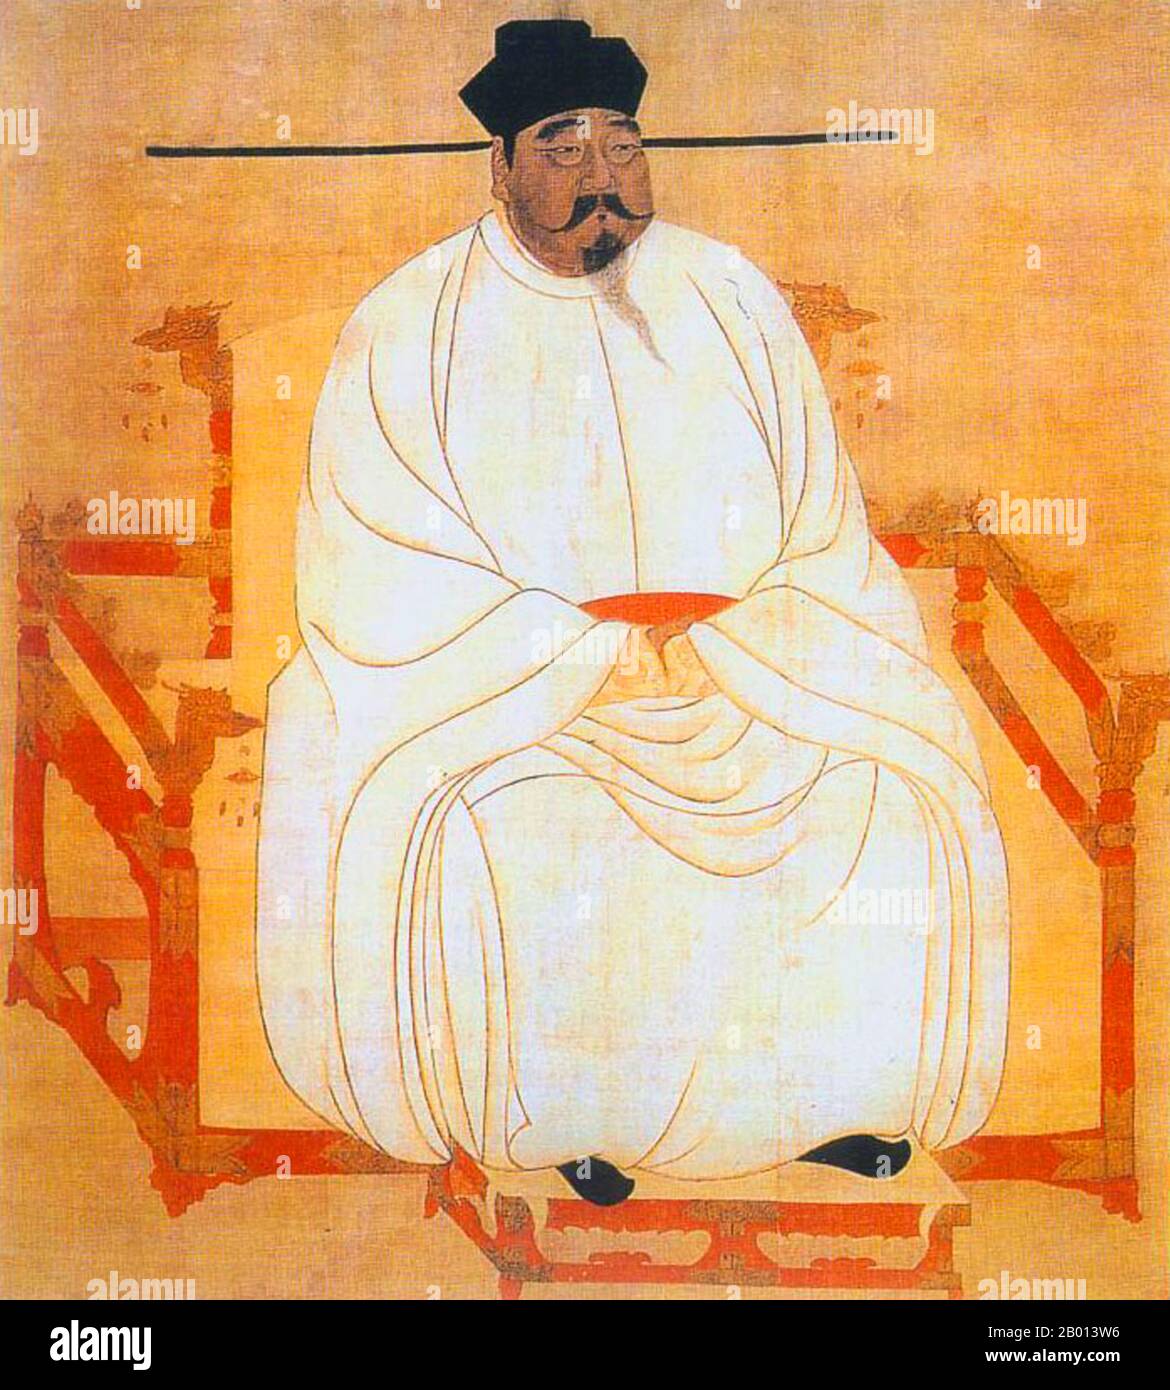 Chine : empereur Taizu (21 mars 927 - 14 novembre 976), 1er dirigeant de la dynastie Song (Nord) (r. 960-976). La peinture suspendue de défilement, dynastie Song (960-1279) l'empereur Taizu de Song, nom personnel Zhao Kuangyin et nom de courtoisie Yuanlang, fut le fondateur de la dynastie Song. En 960, Song Taizu a aidé à réunir la majeure partie de la Chine après la fragmentation et la rébellion résultant de la chute de la dynastie Tang en 907. Il a établi les règles et la politique de base de Song ancêtre pour les futurs empereurs. Il a été rappelé pour son expansion du système d'examen de la fonction publique nationale. Banque D'Images